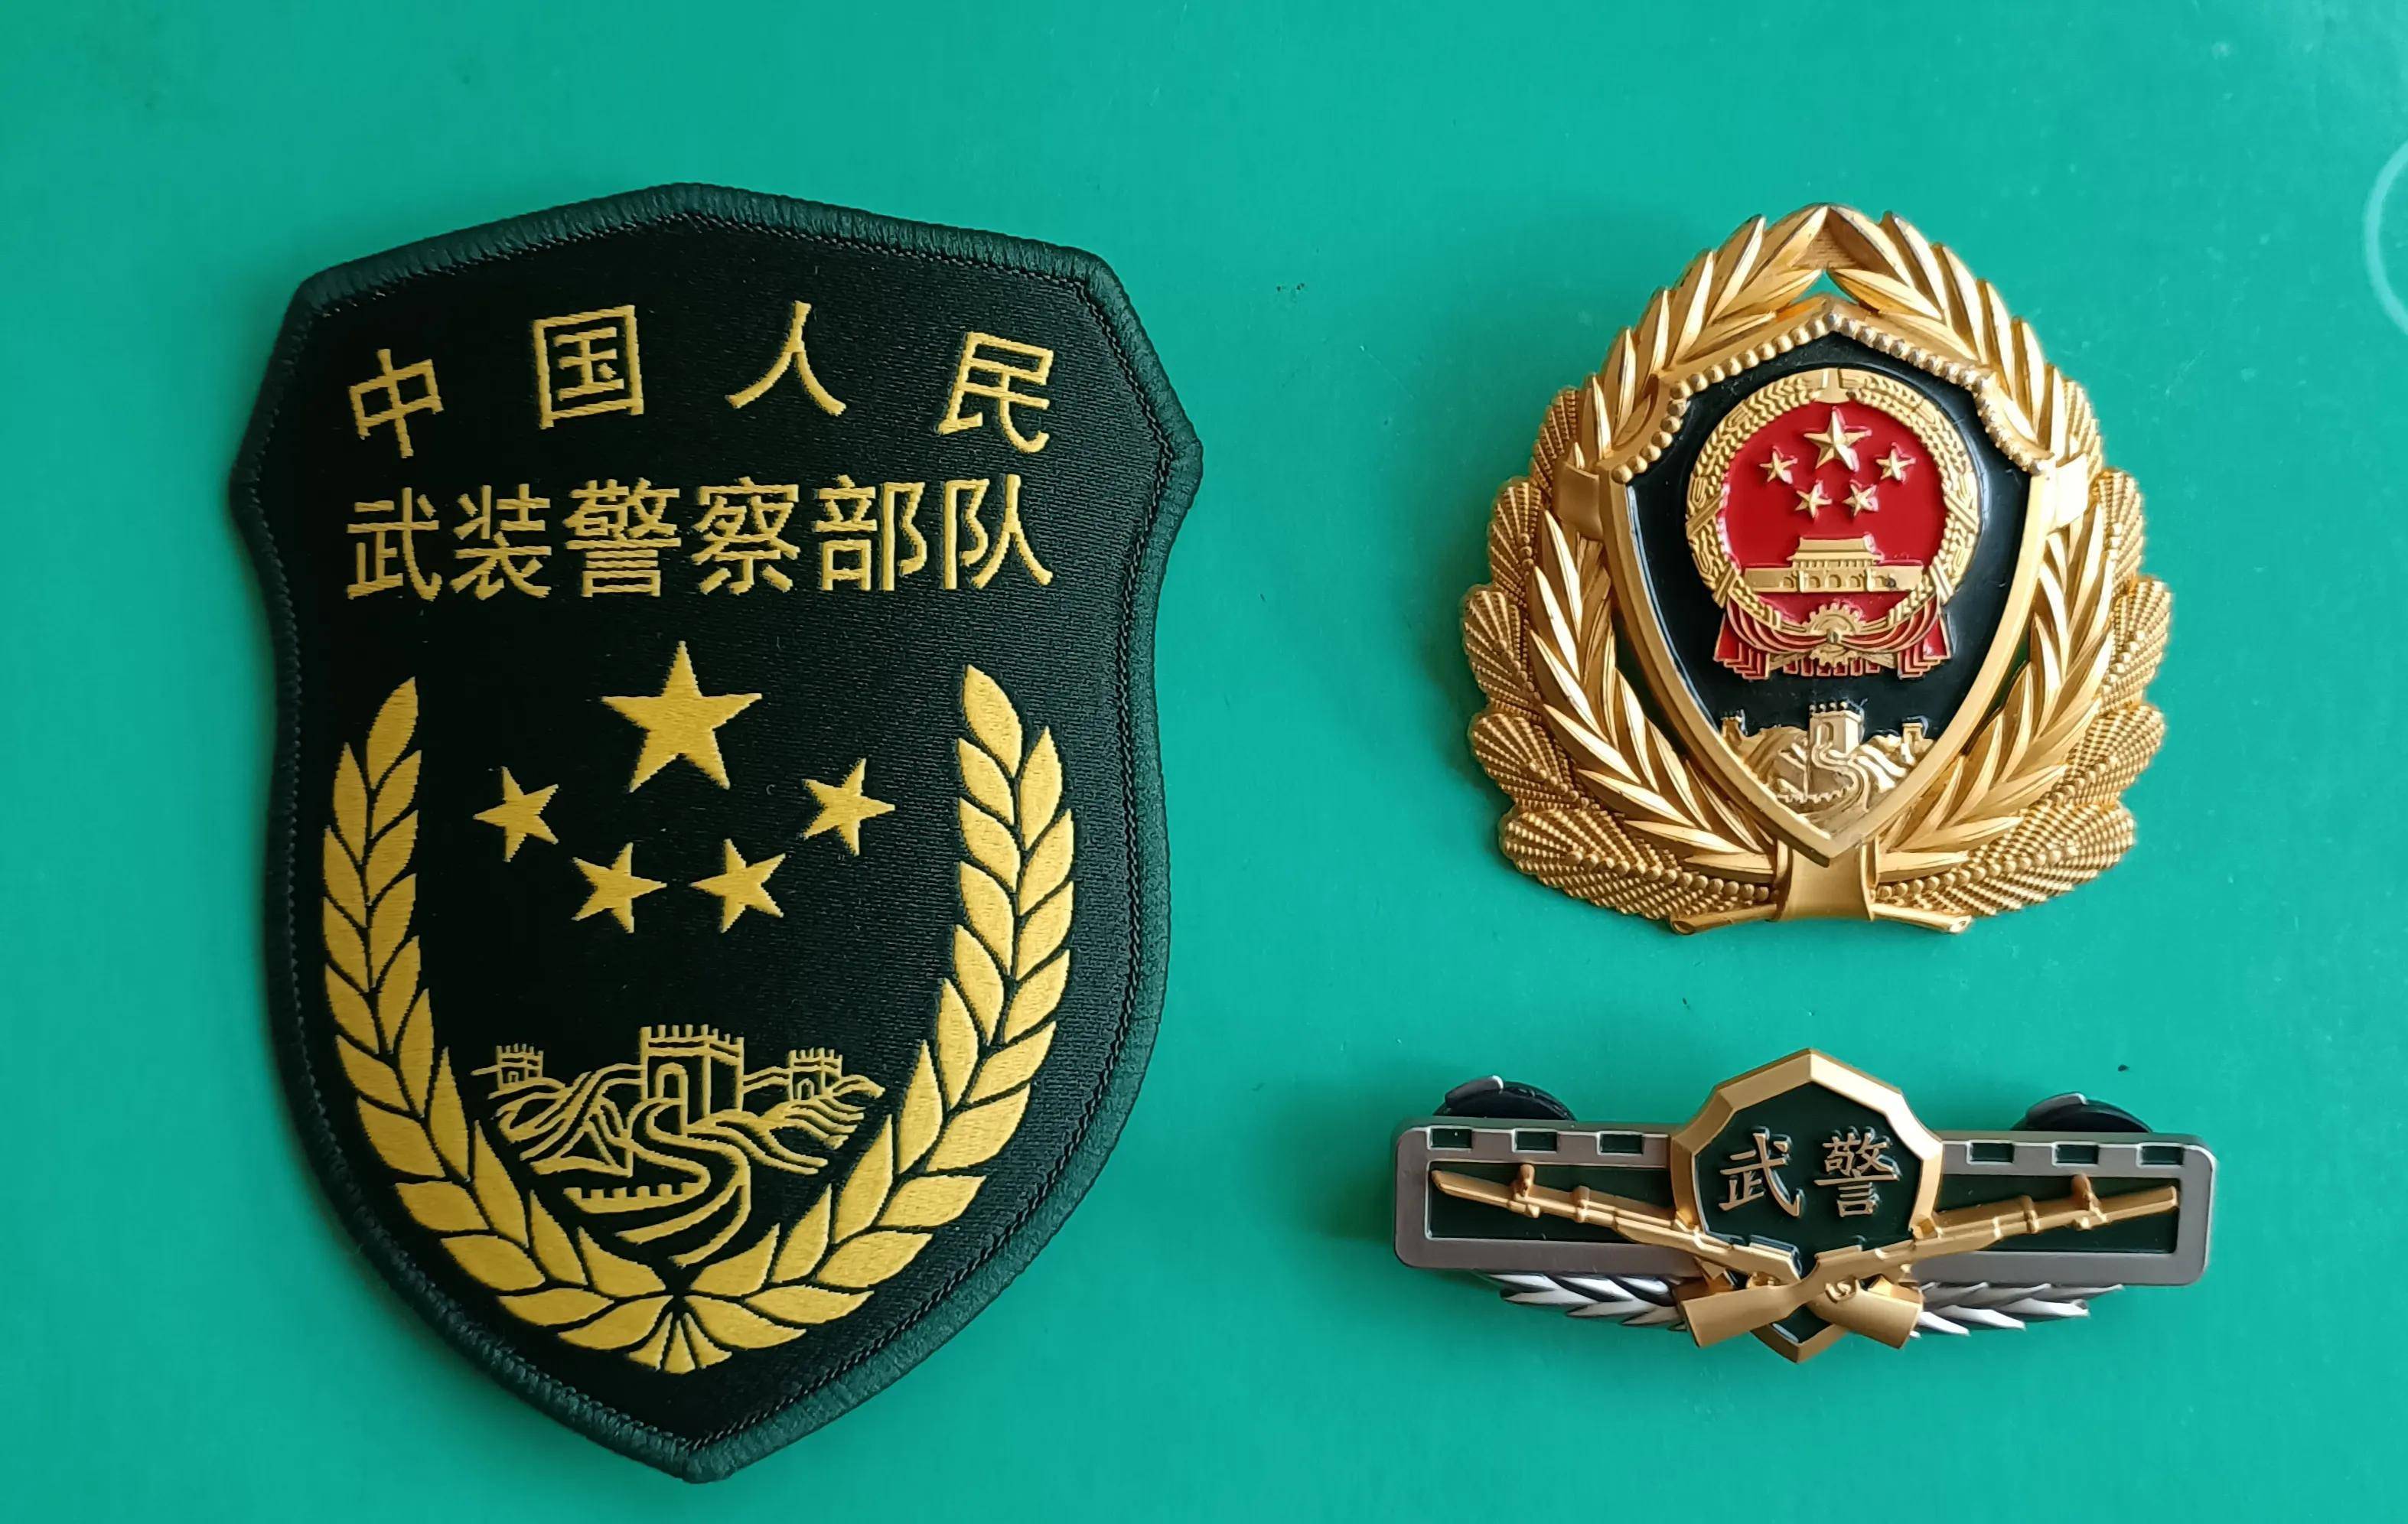 中國人民武裝警察部隊安徽省總隊